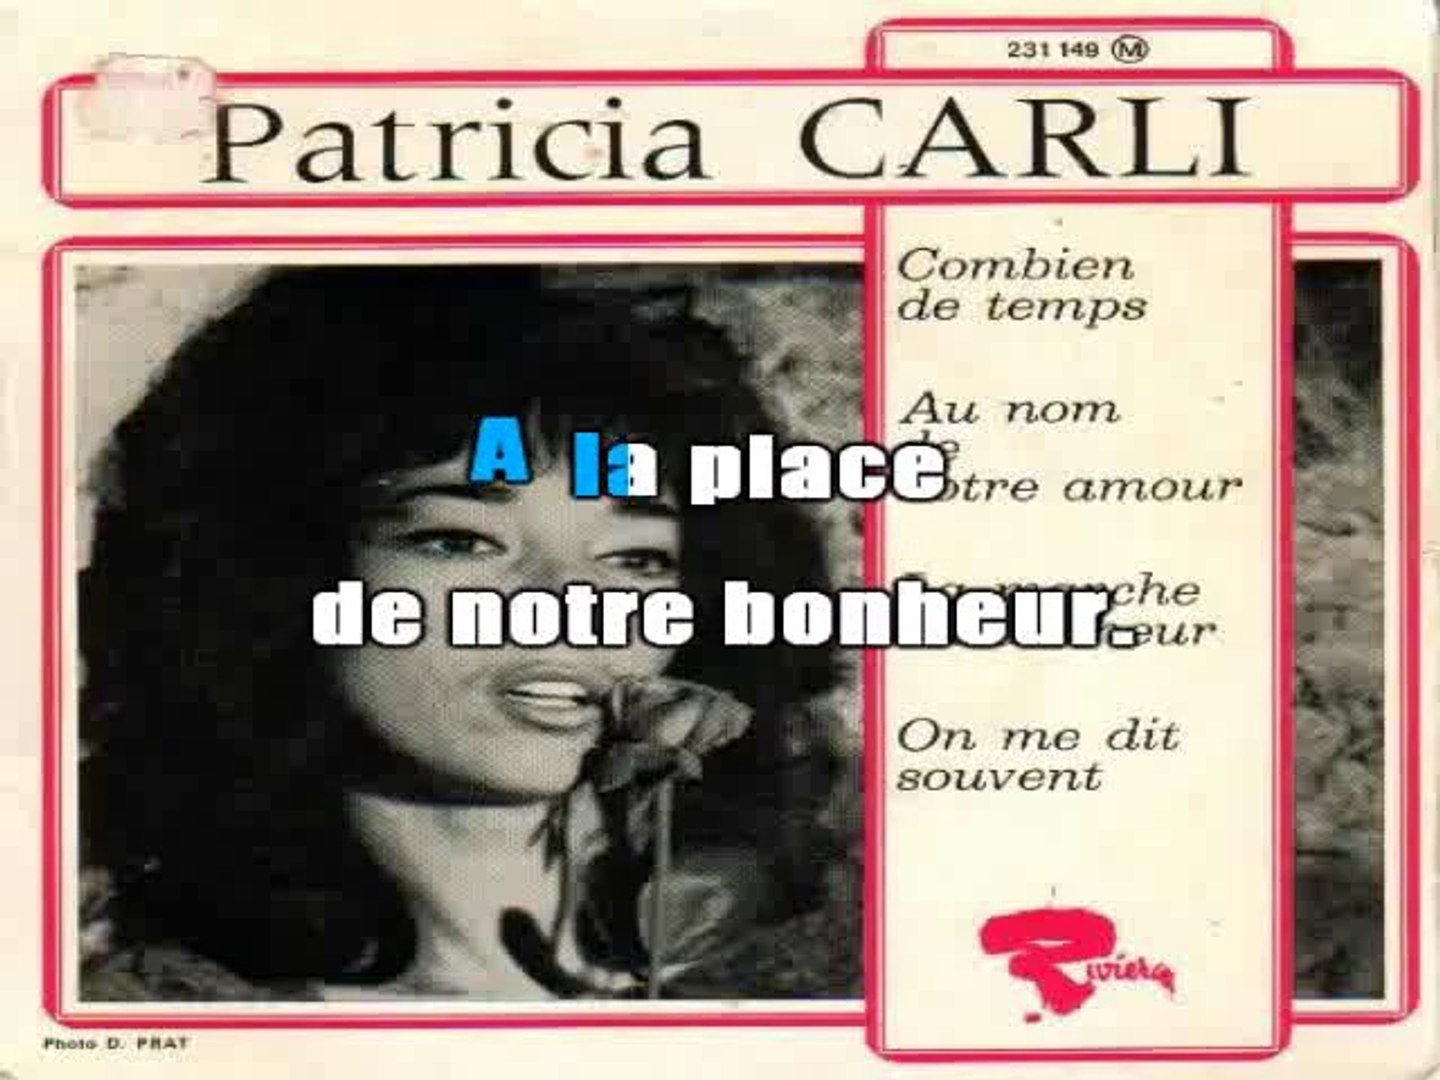 Arrête, arrête ne me touche pas - Patricia Carli (1963) 